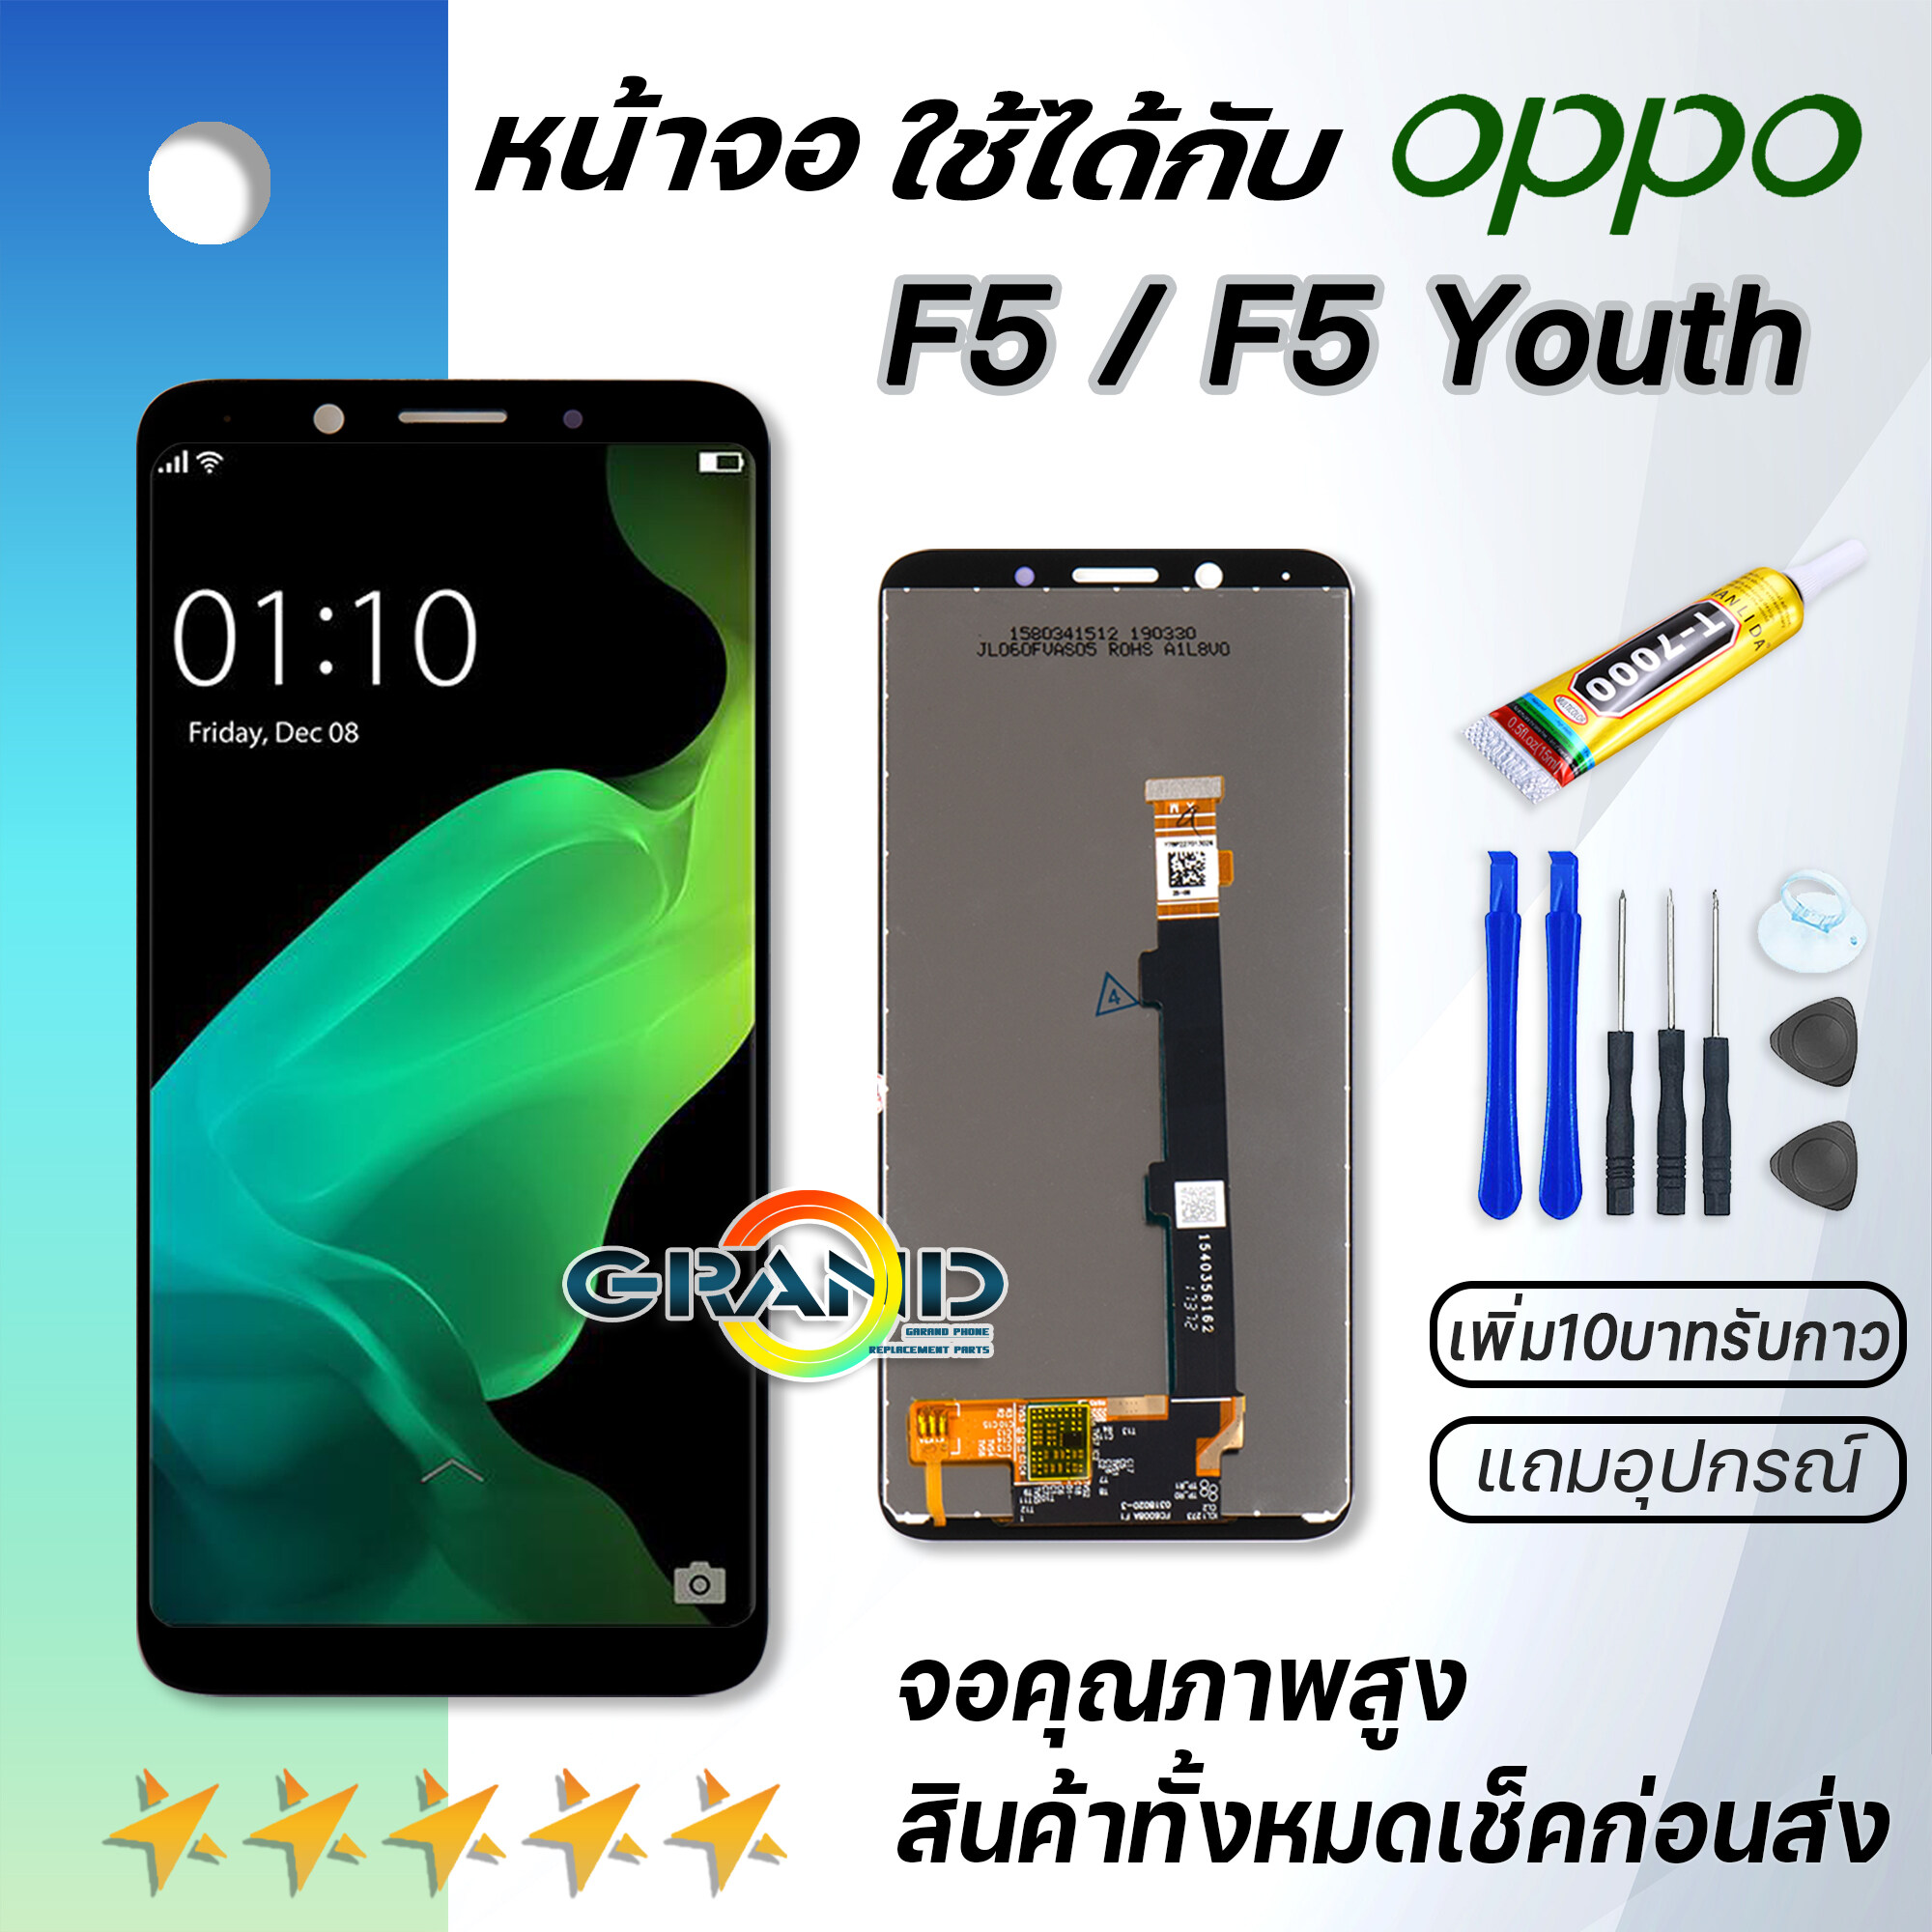 Grand Phone หน้าจอ oppo F5,F5 Youth  หน้าจอ LCD พร้อมทัชสกรีน ออปโป้ F5,F5 Youth Screen Display Touch Panel For oppo F5,F5 Youth แถมไขควง สามารถเลือกซื้อพร้อมกาว